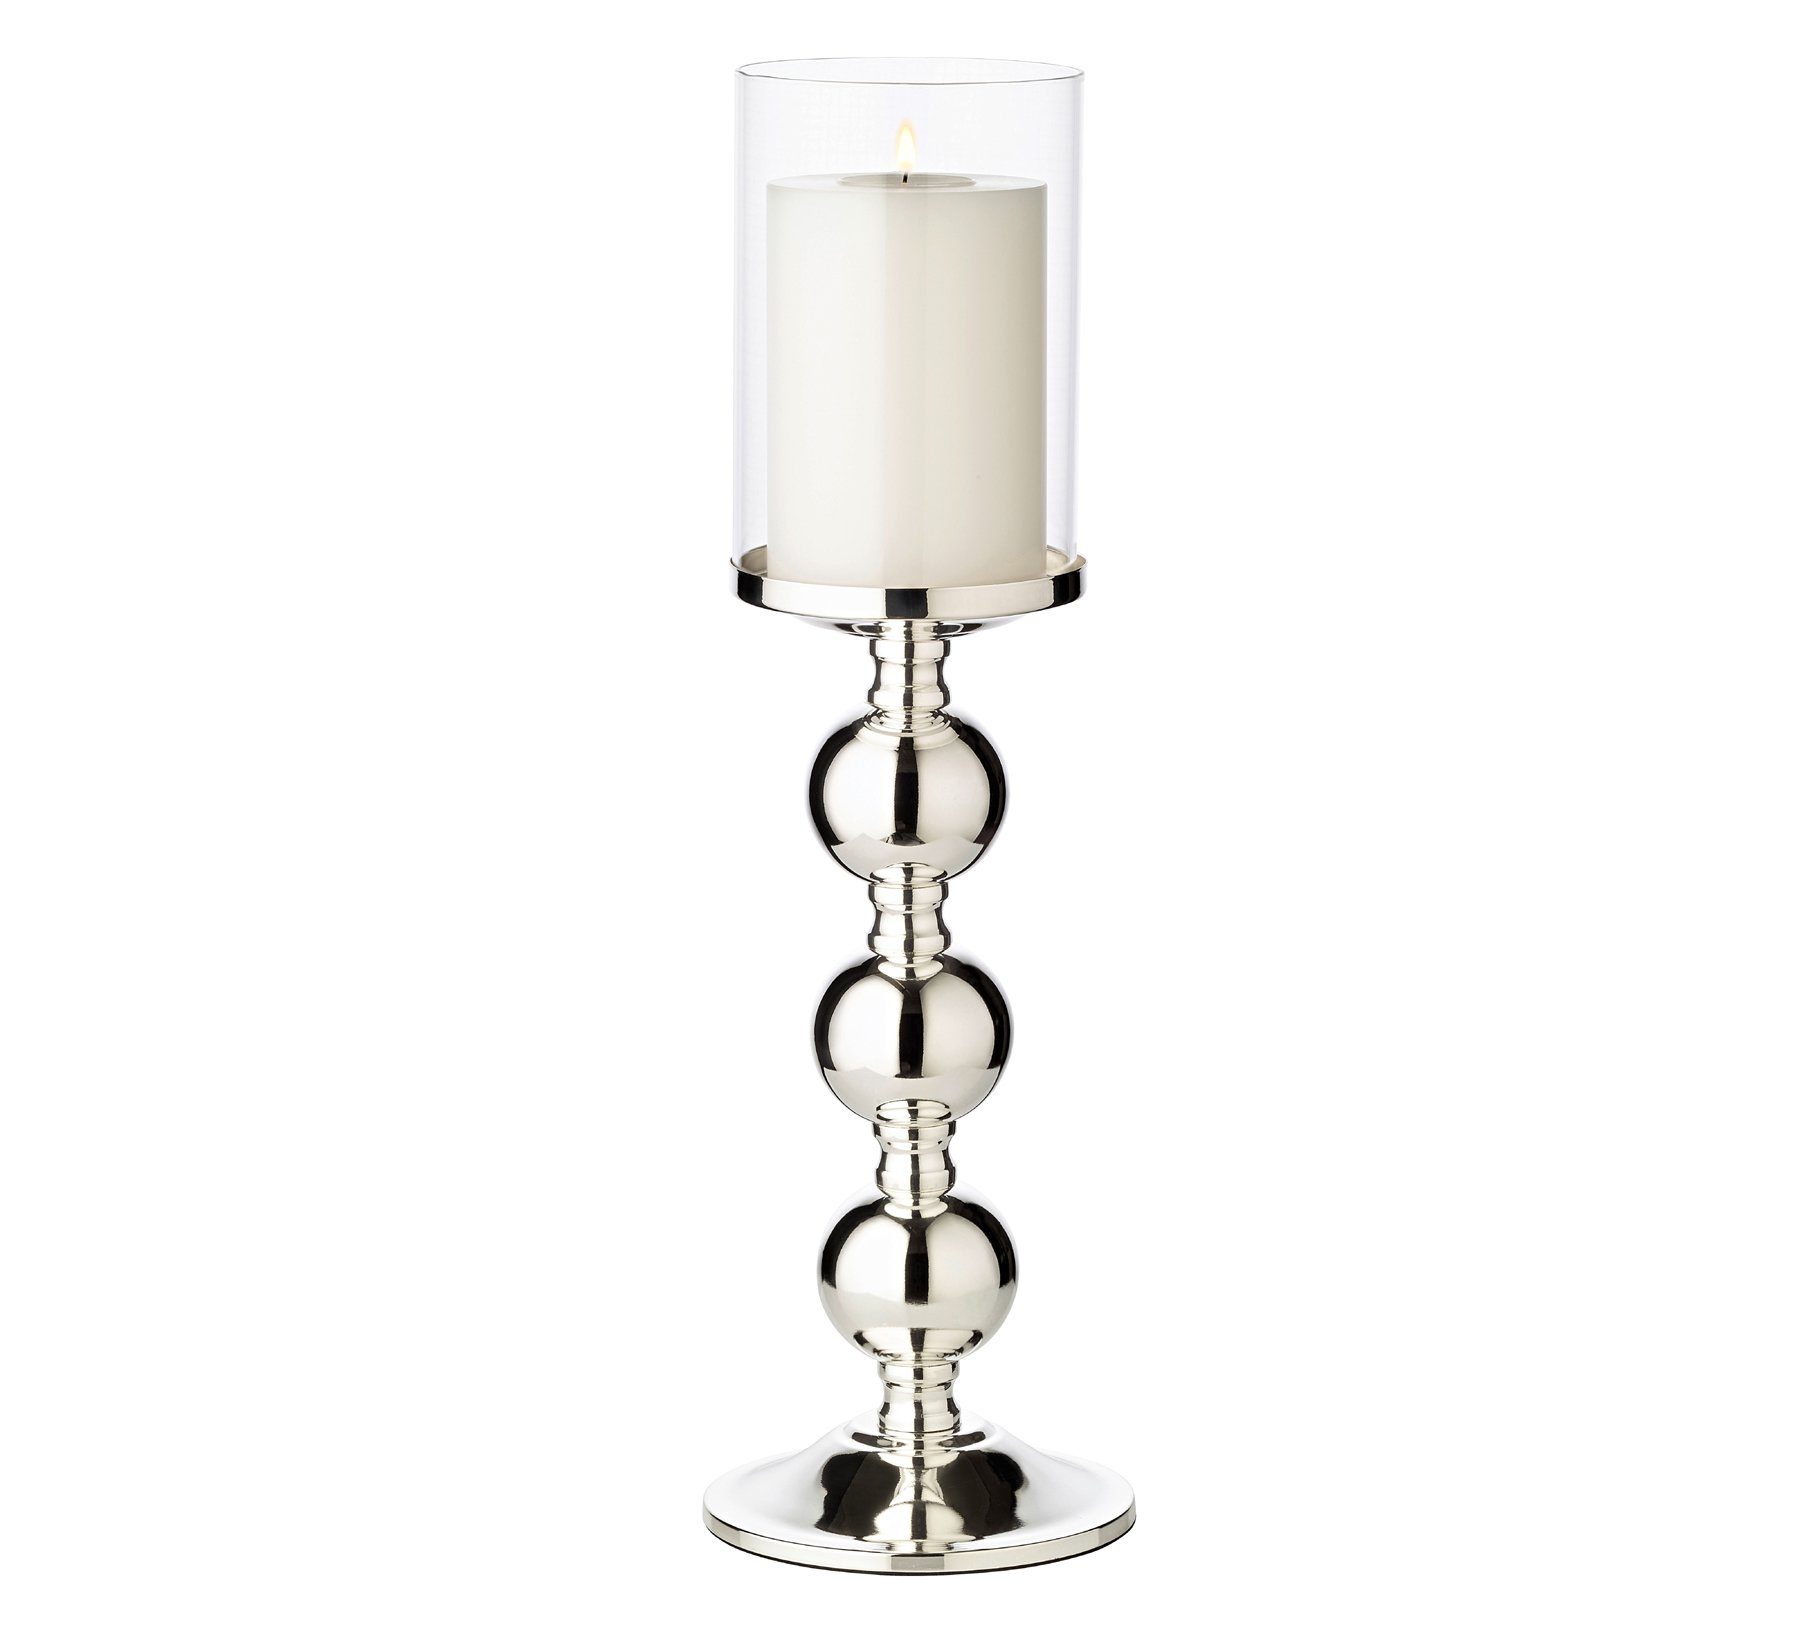 EDZARD Kerzenständer, Kerzenleuchter für Stumpenkerzen, Kerzenhalter mit  Glas-Aufsatz und Silber-Optik, versilbert und anlaufgeschützt, Höhe 44 cm  online kaufen | OTTO